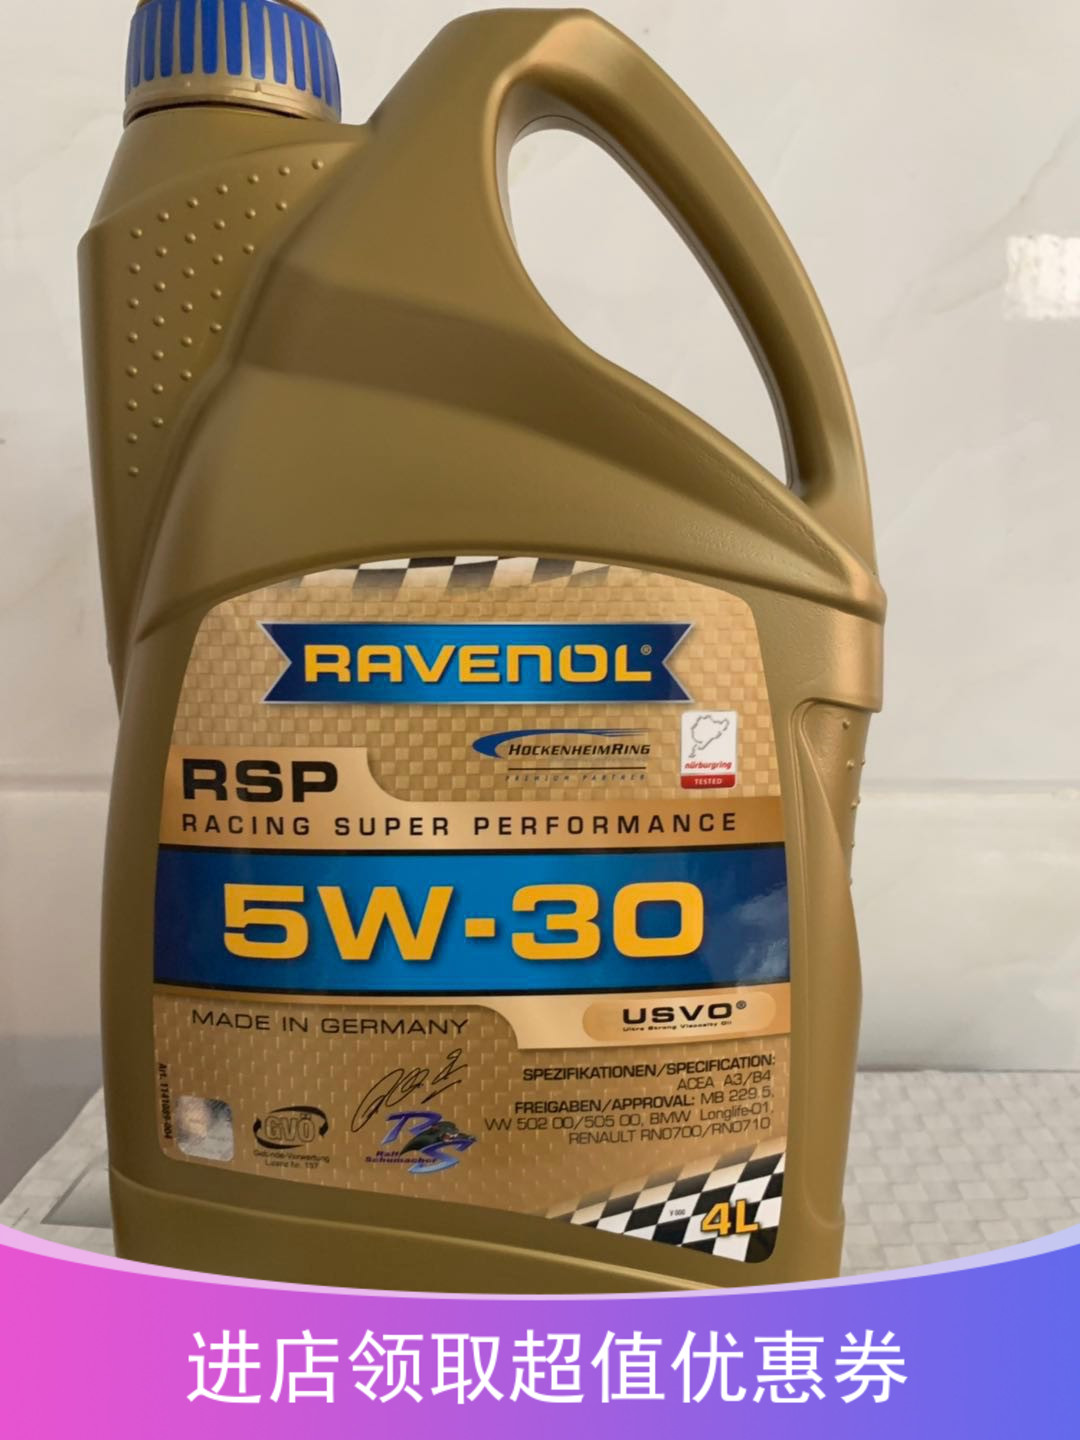 德国Ravenol拉维诺/拉锋Racing赛道 RSP 5W-30 4+5类全合成机油1L 汽车零部件/养护/美容/维保 清洗剂/养护剂 原图主图